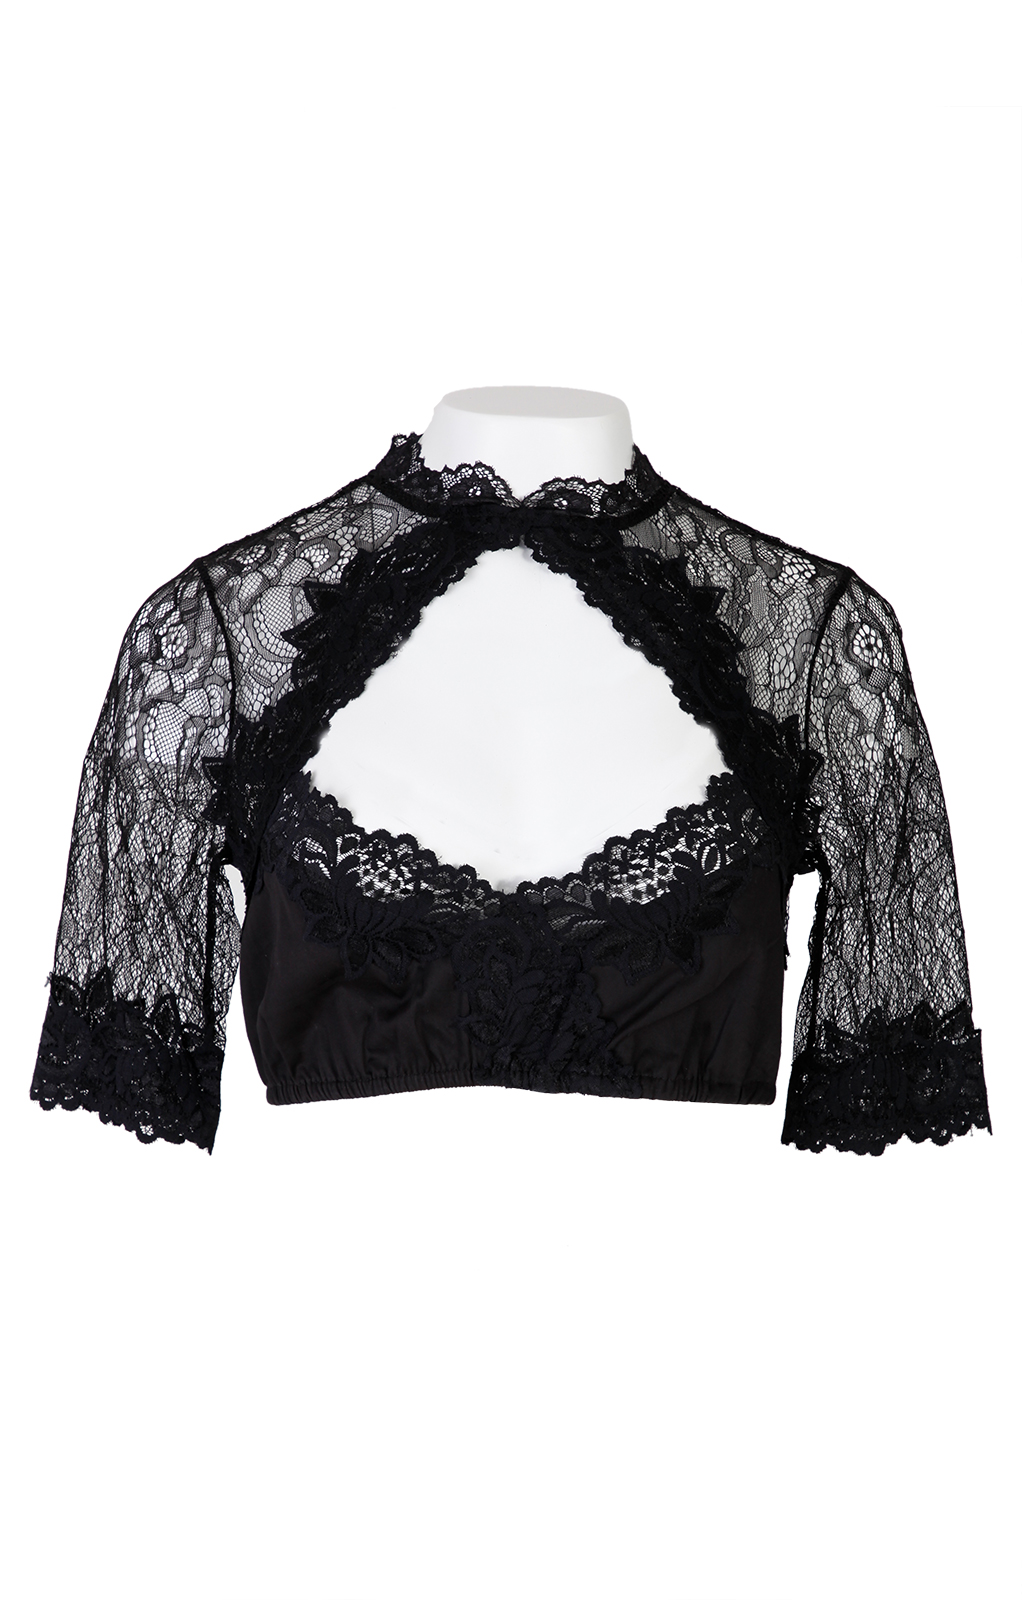 weitere Bilder von Traditional dirndl blouse PIPPA black